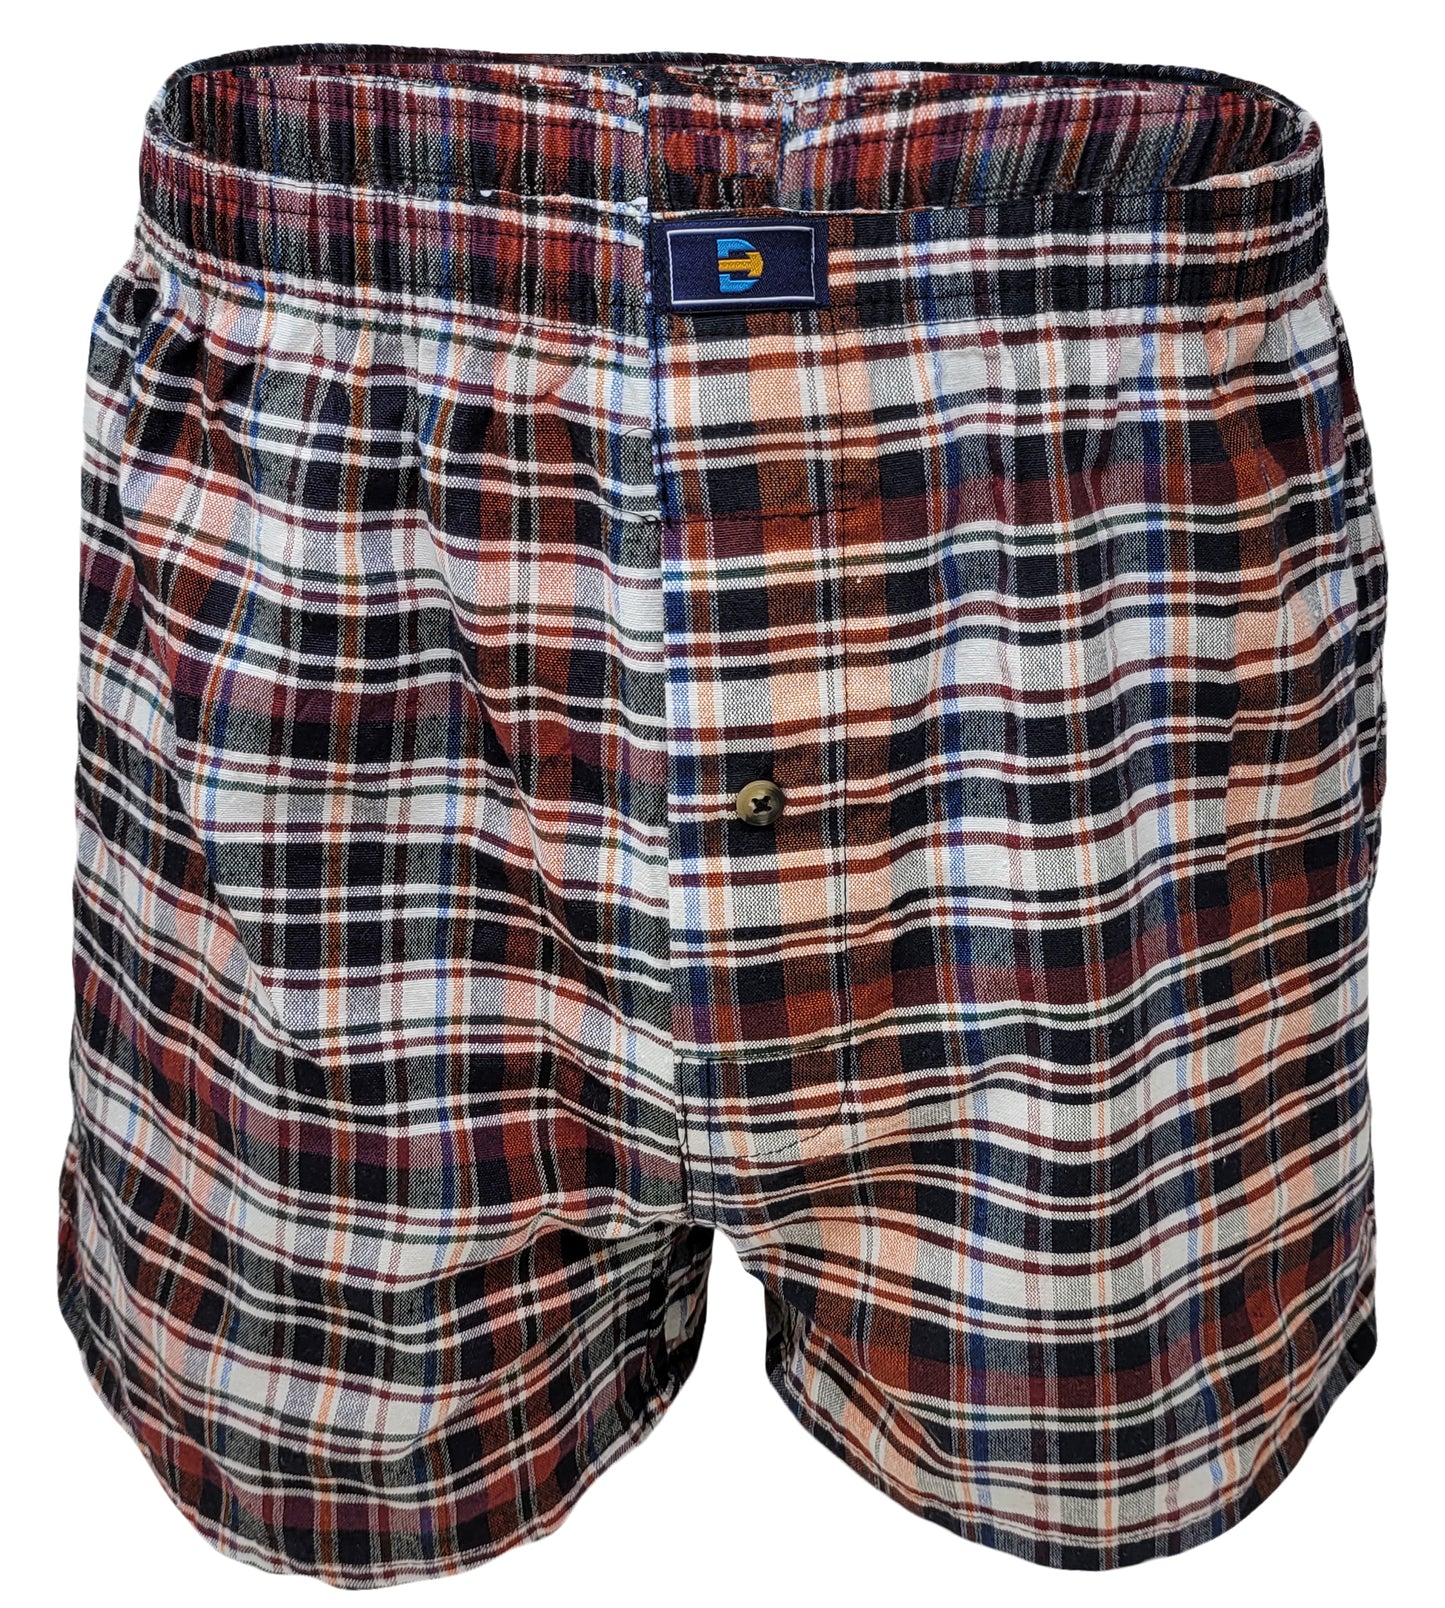 Boxer Shorts Underwear | Classic Design Plaid Woven | Men's (6 Pack)